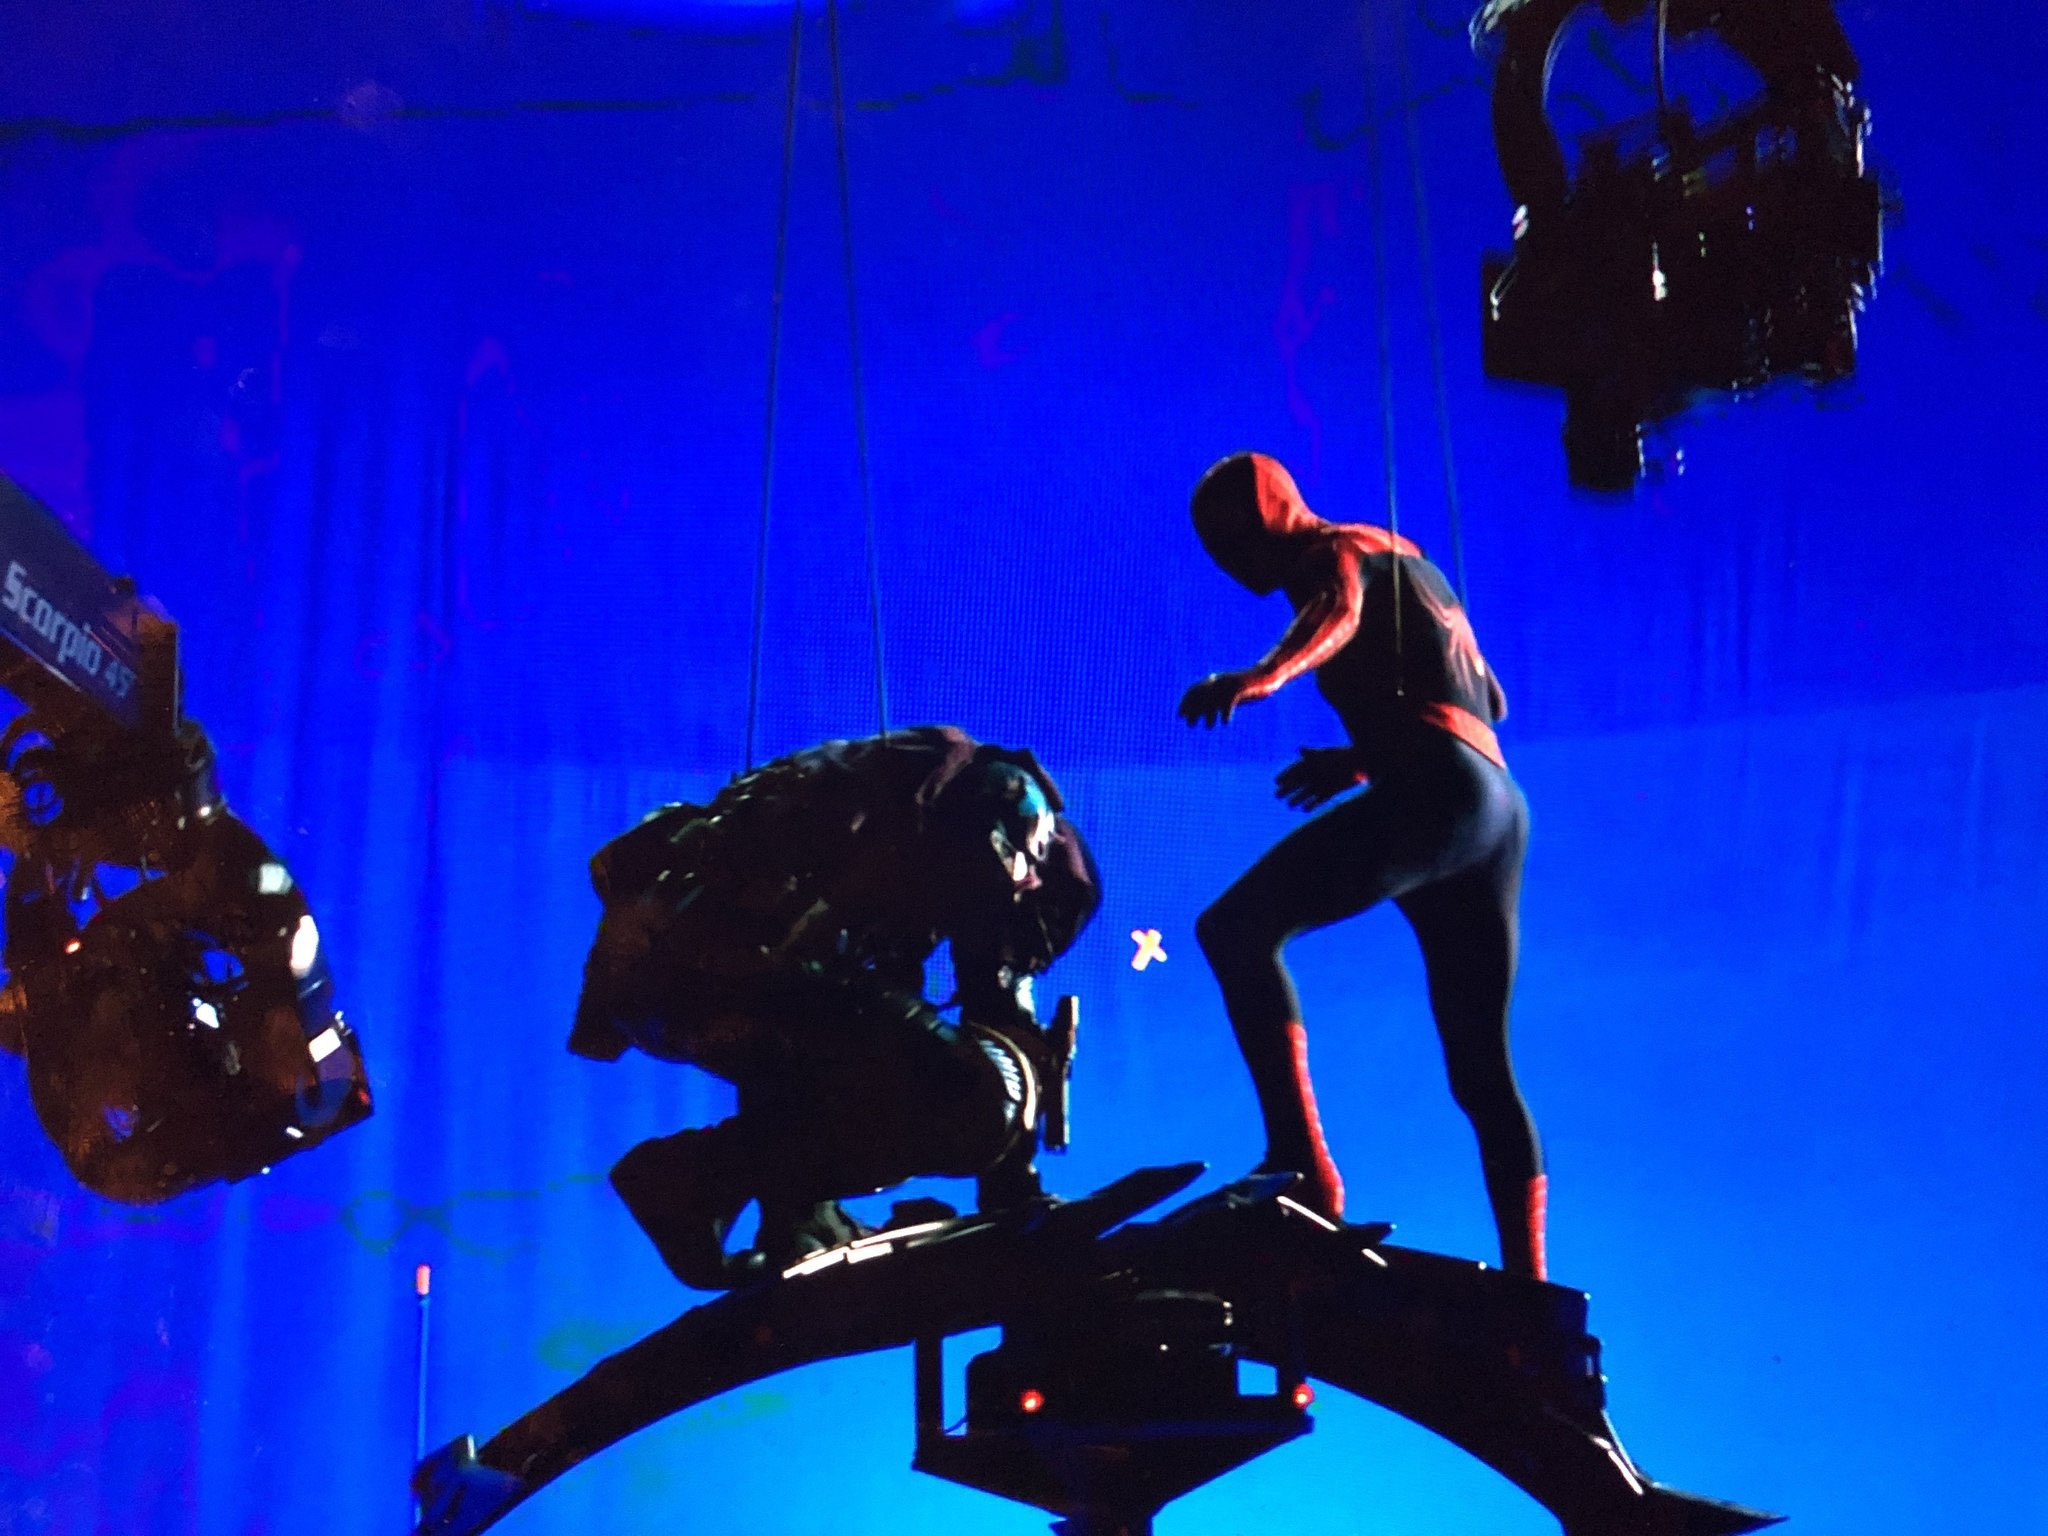 Cena deletada entre o Duende Verde (Willem Dafoe) e o Homem-Aranha (Tobey Maguire) em bastidores do filme (Reprodução)